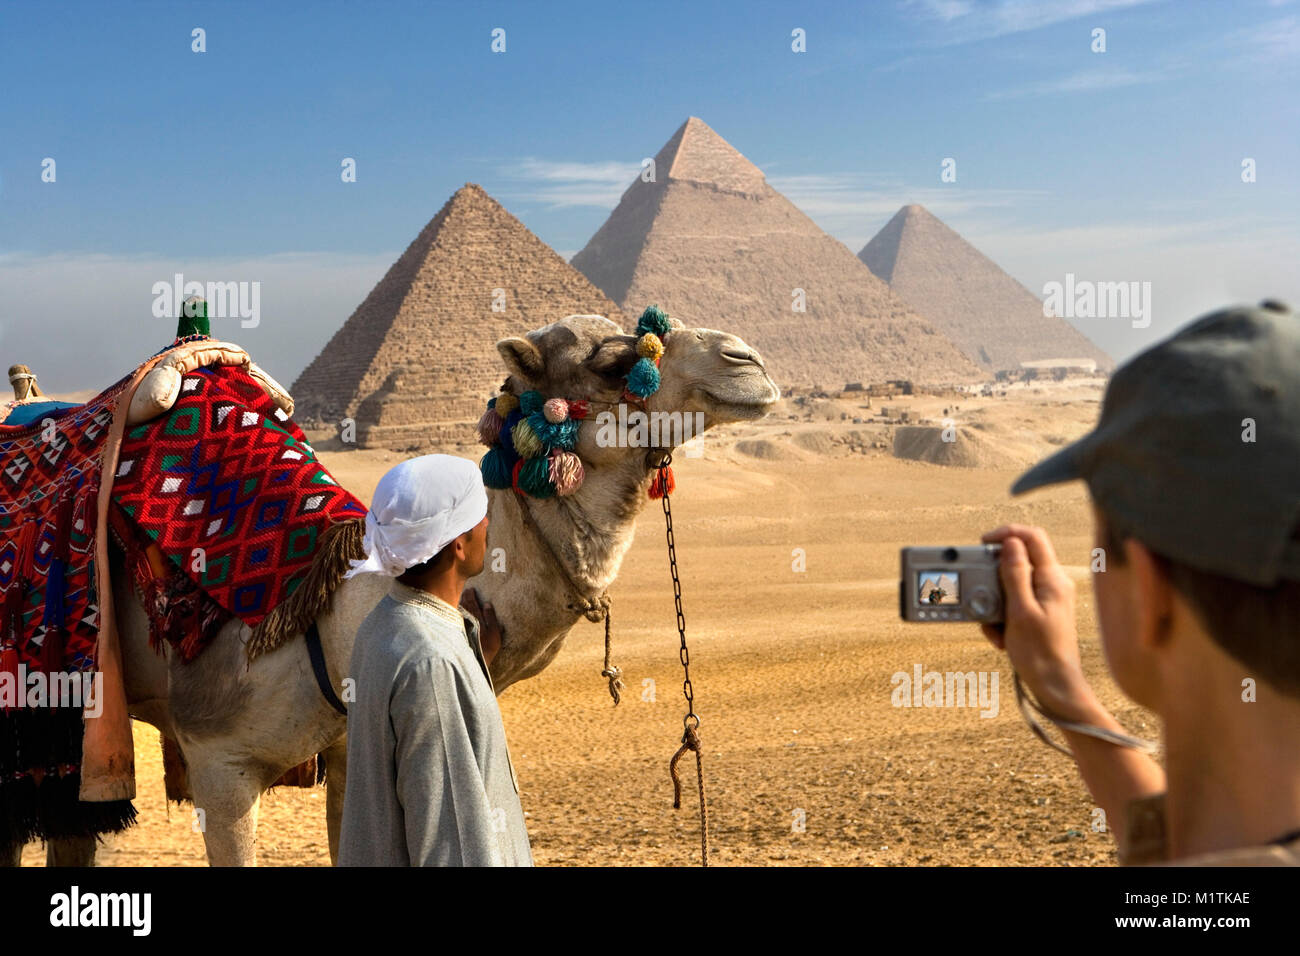 L'Egitto, al Cairo. Piramidi di Giza o Giza. L'uomo, camel driver, cammelli e turistico (donna) nel deserto vicino a piramidi. Unesco World Heritage Site. Foto Stock